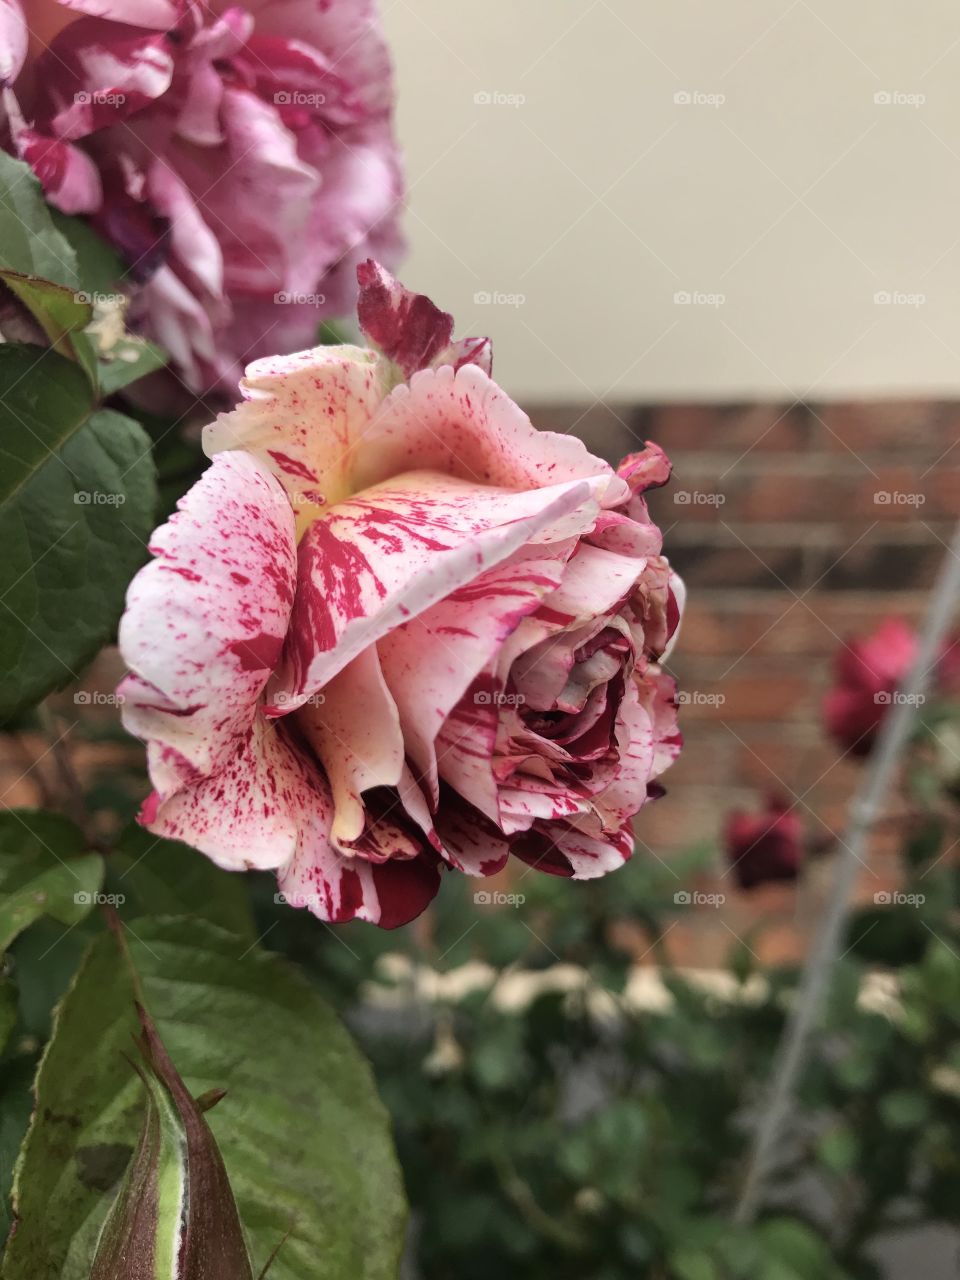 Stunning pink rose